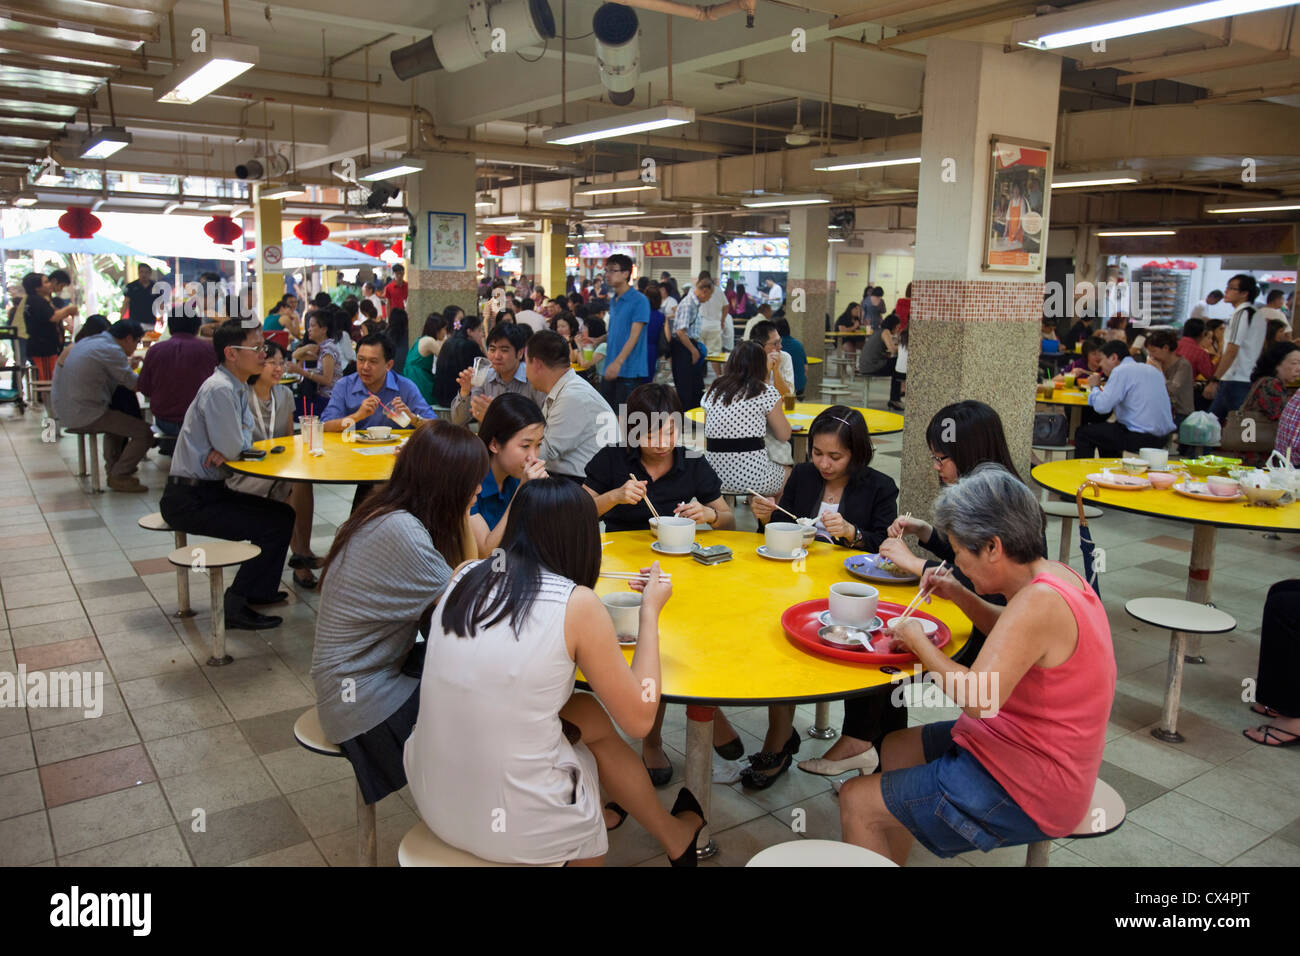 La foule à l'heure du déjeuner le People's Park Complex hawker centre (food court). Chinatown, Singapour Banque D'Images